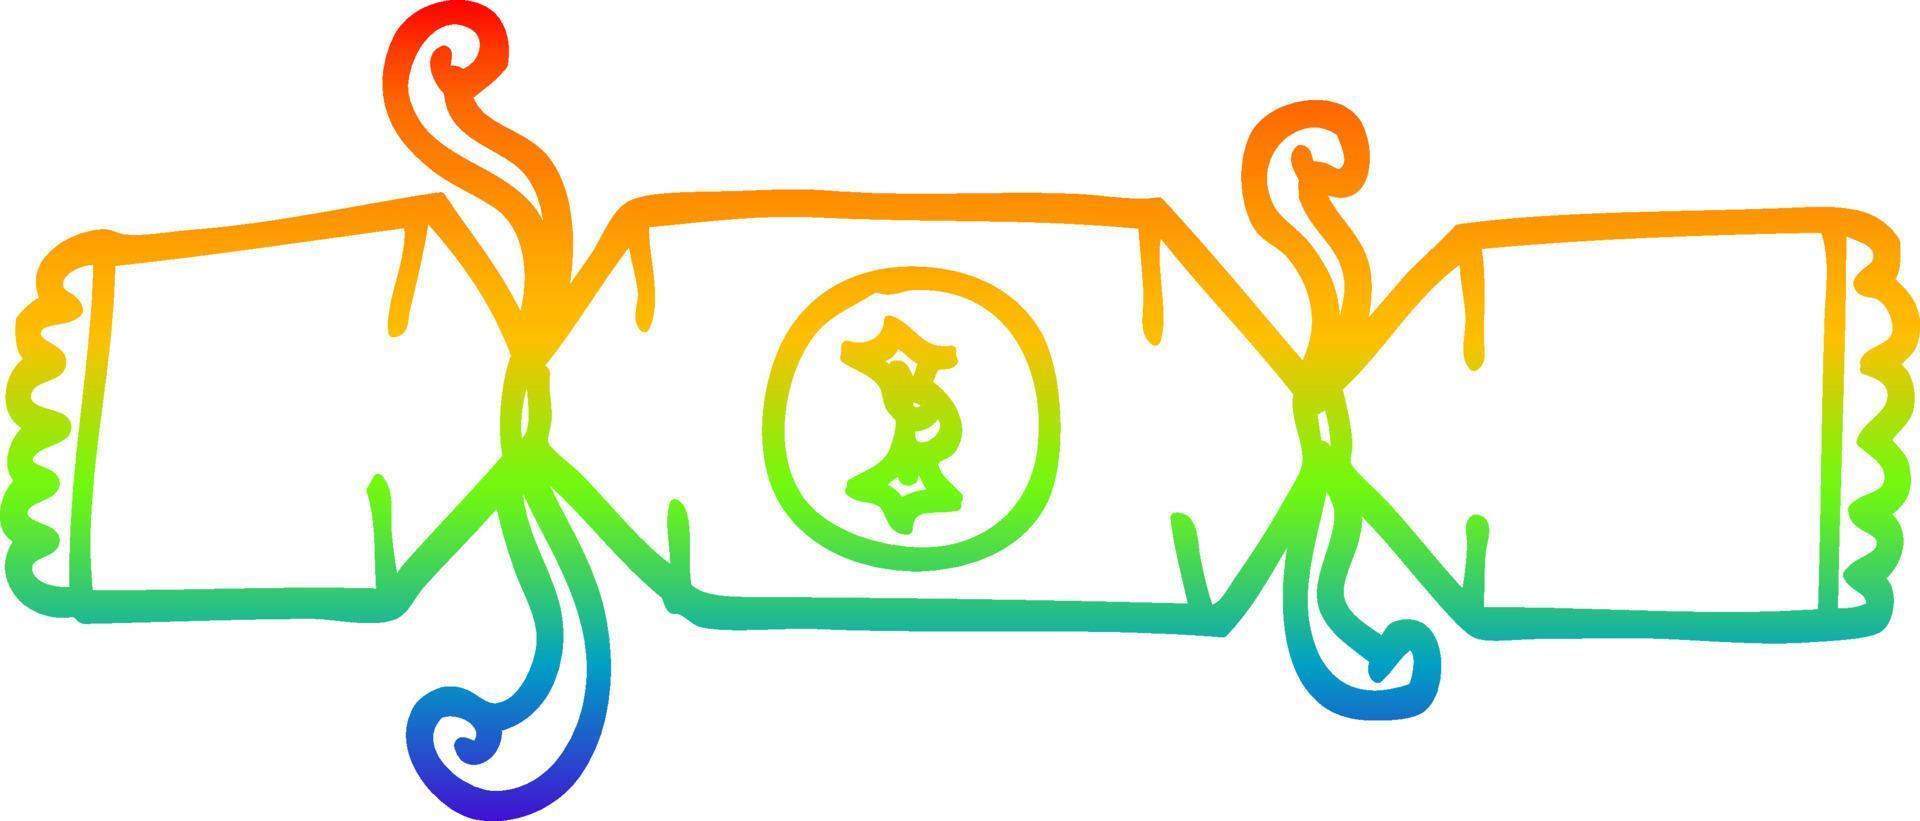 arco iris gradiente línea dibujo dibujos animados navidad galleta vector